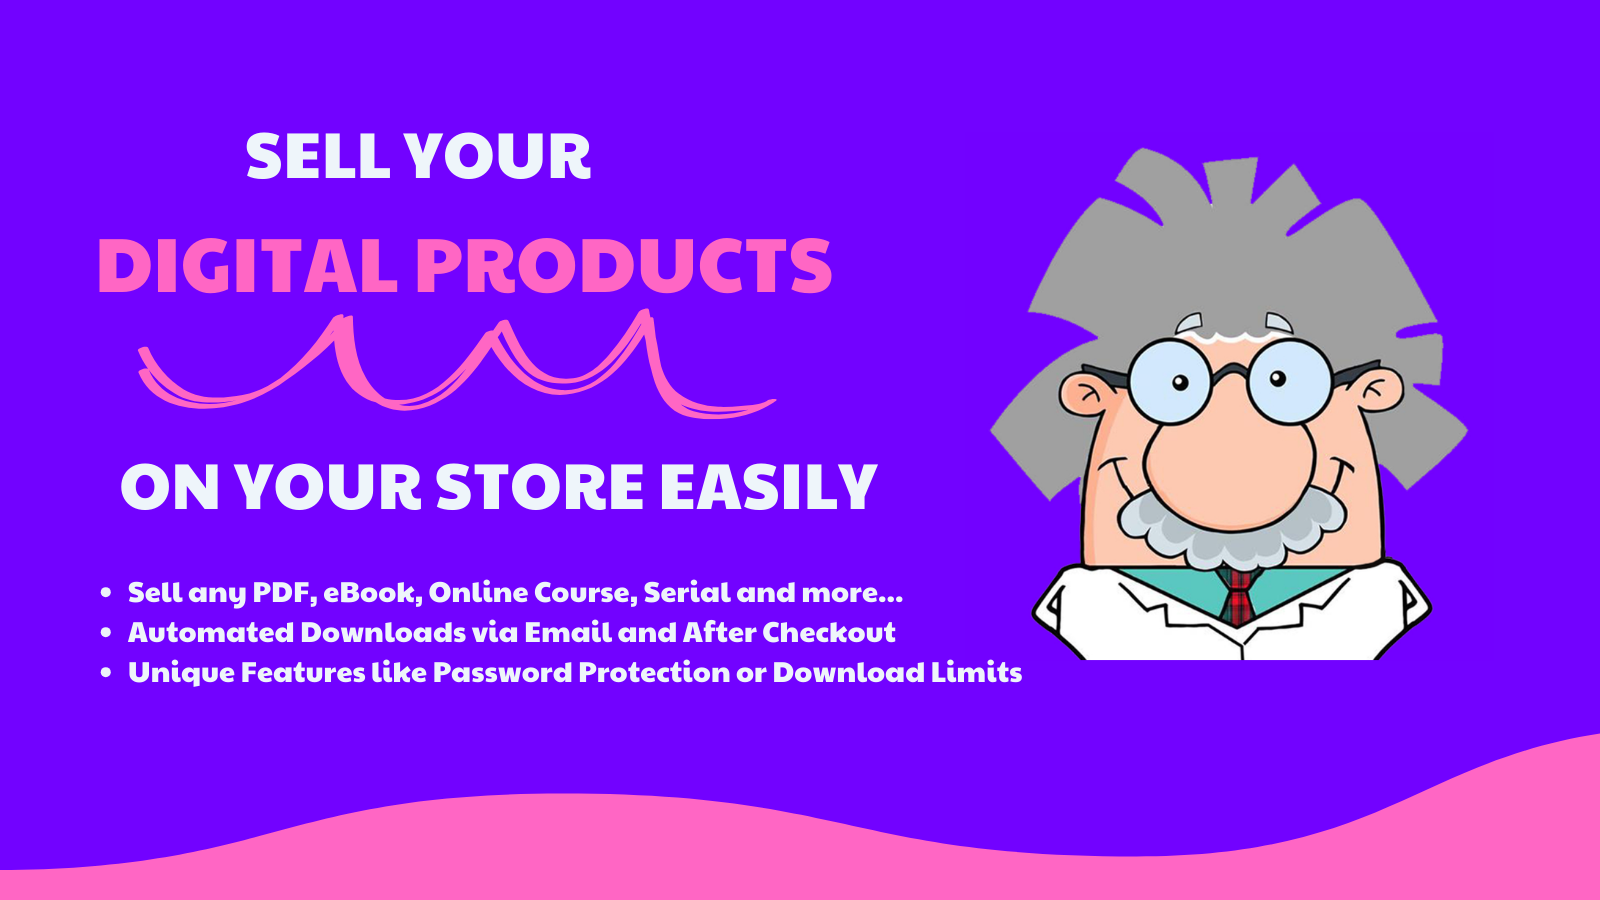 Verkoop uw digitale producten gemakkelijk in uw winkel